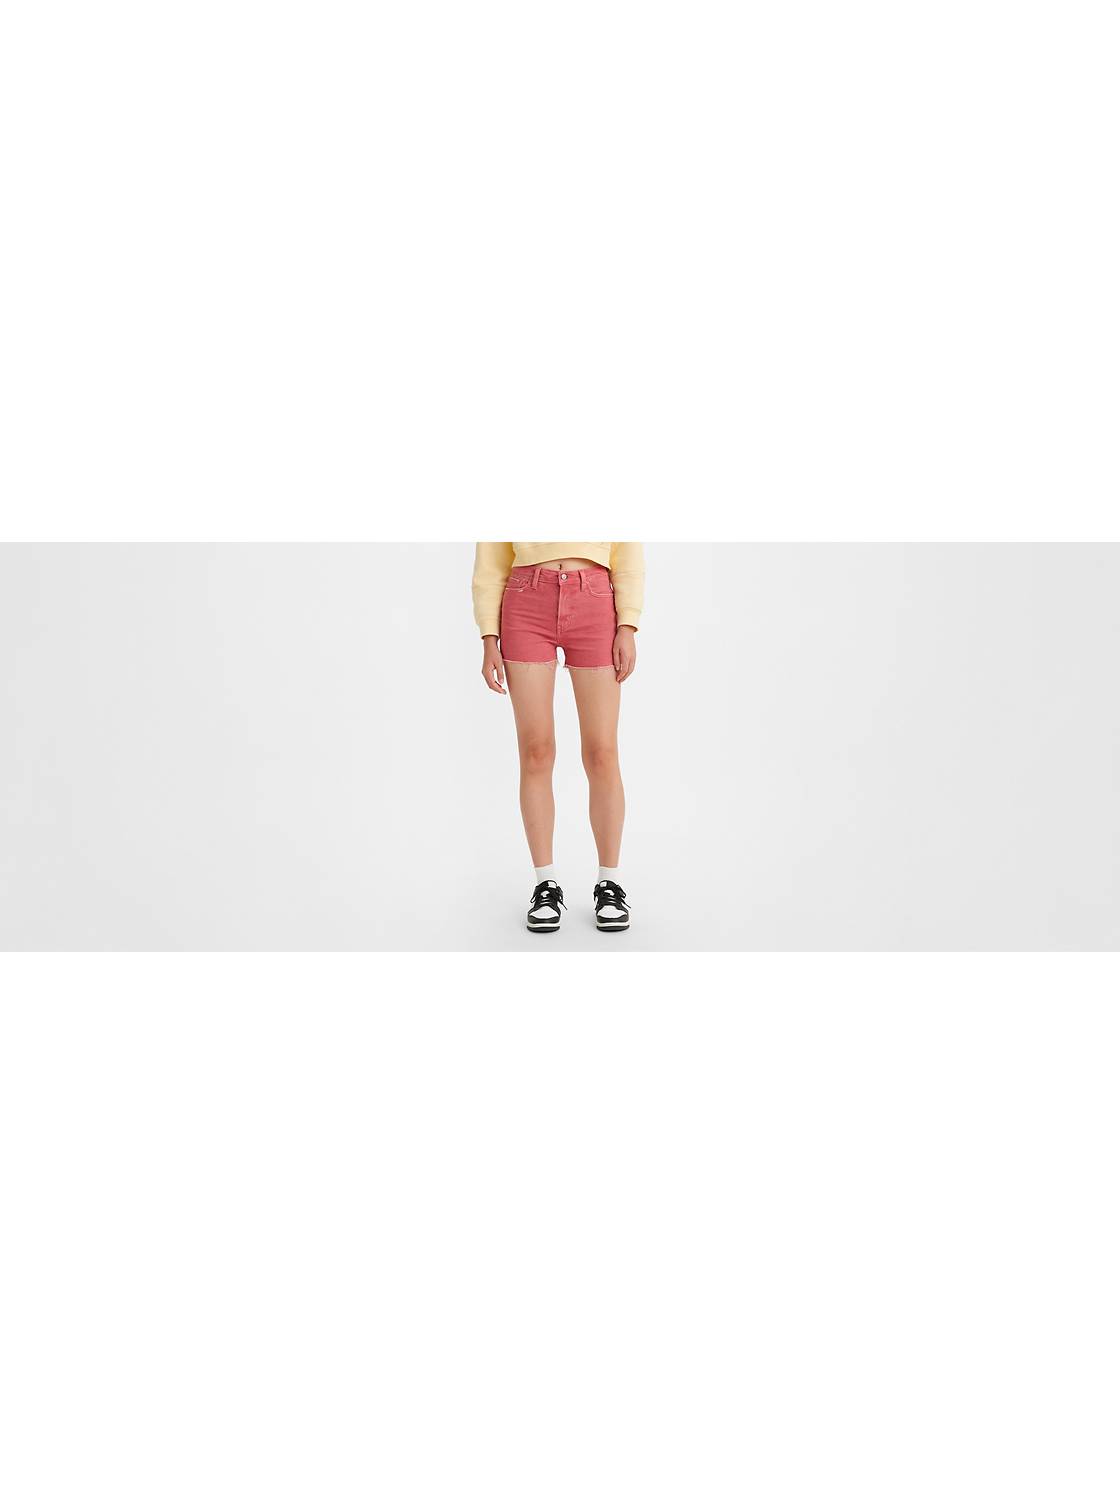 Levi's® 501 Original High Rise Frayed Hem Shorts